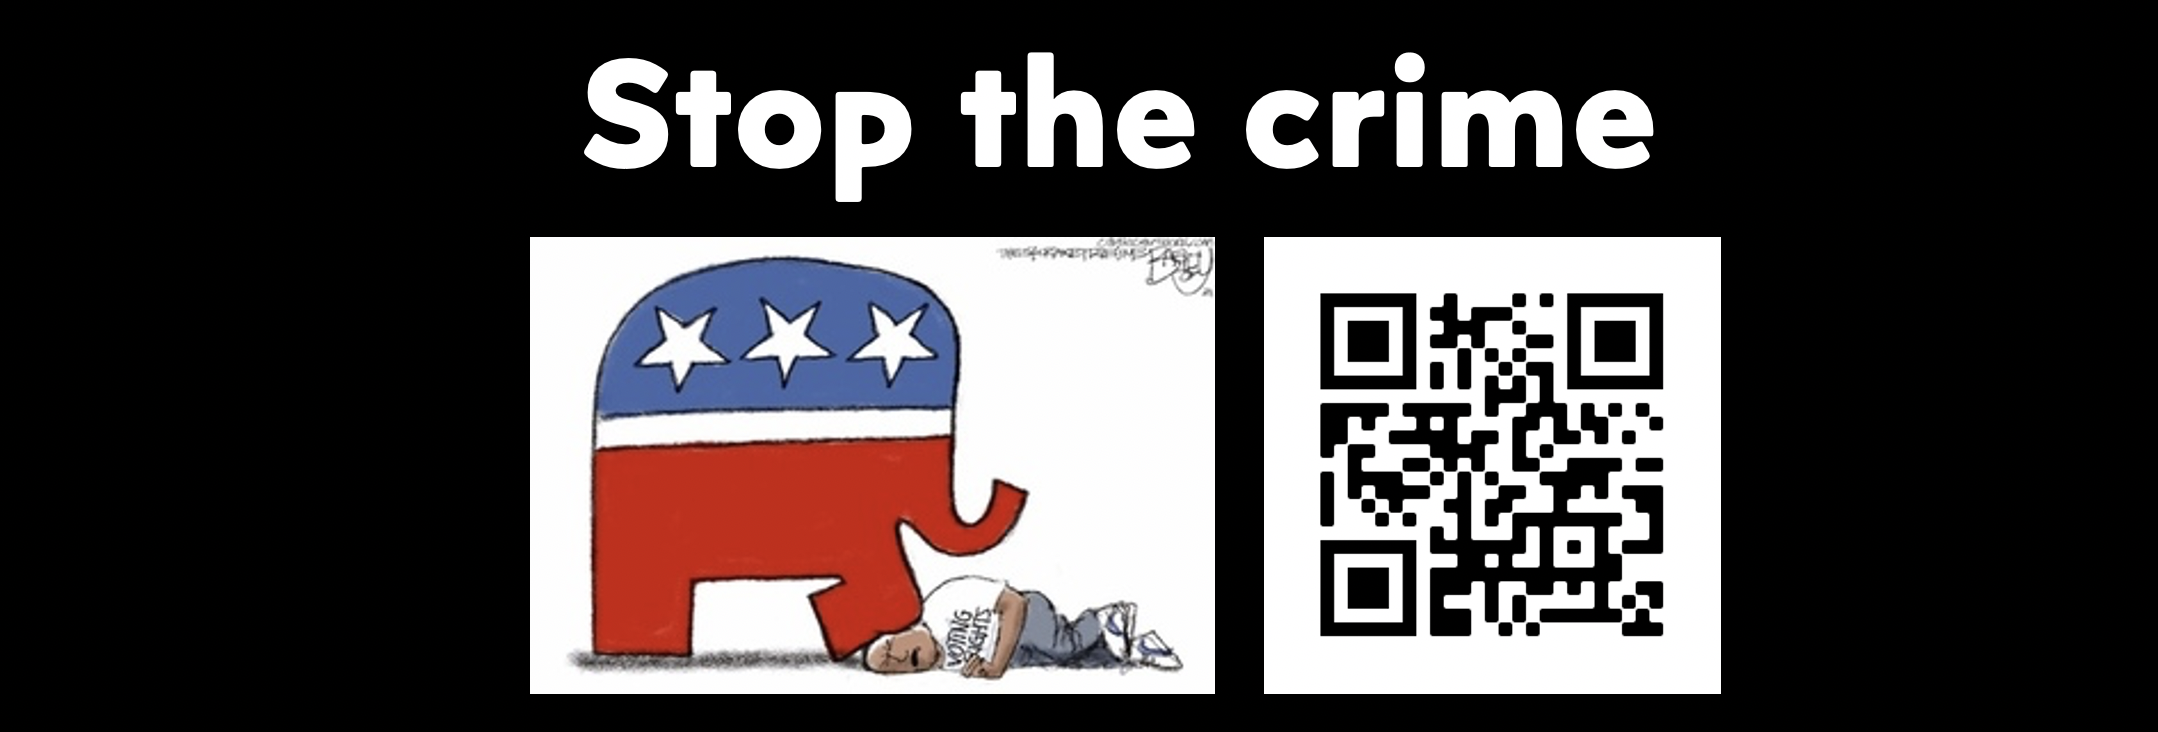 Stop the Republican voter suppression crime